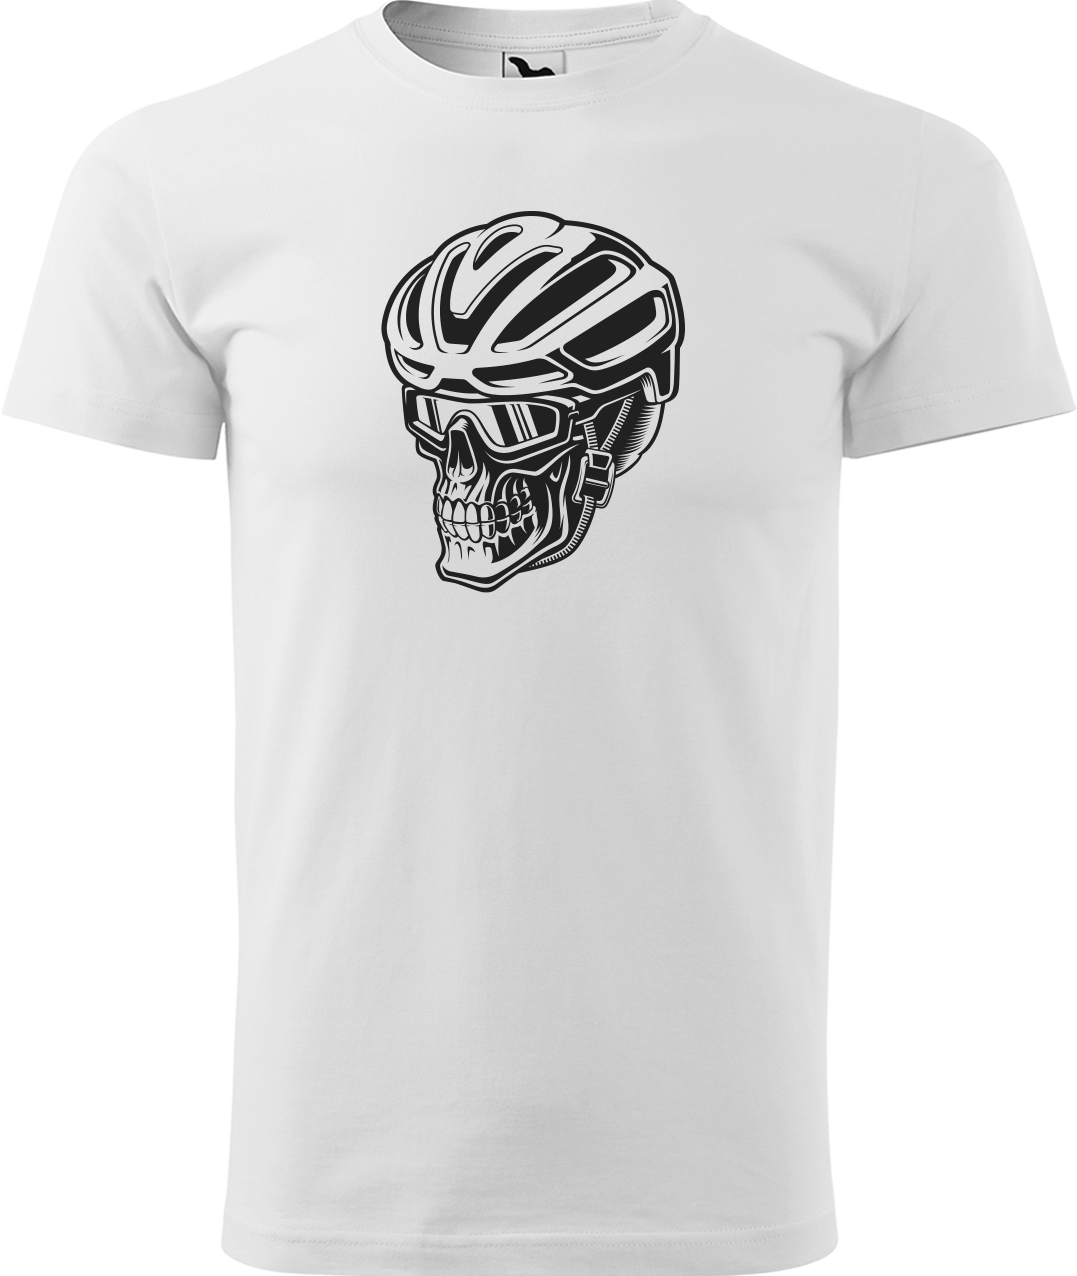 Pánské tričko pro cyklistu - Lebka v helmě Velikost: L, Barva: Bílá (00)